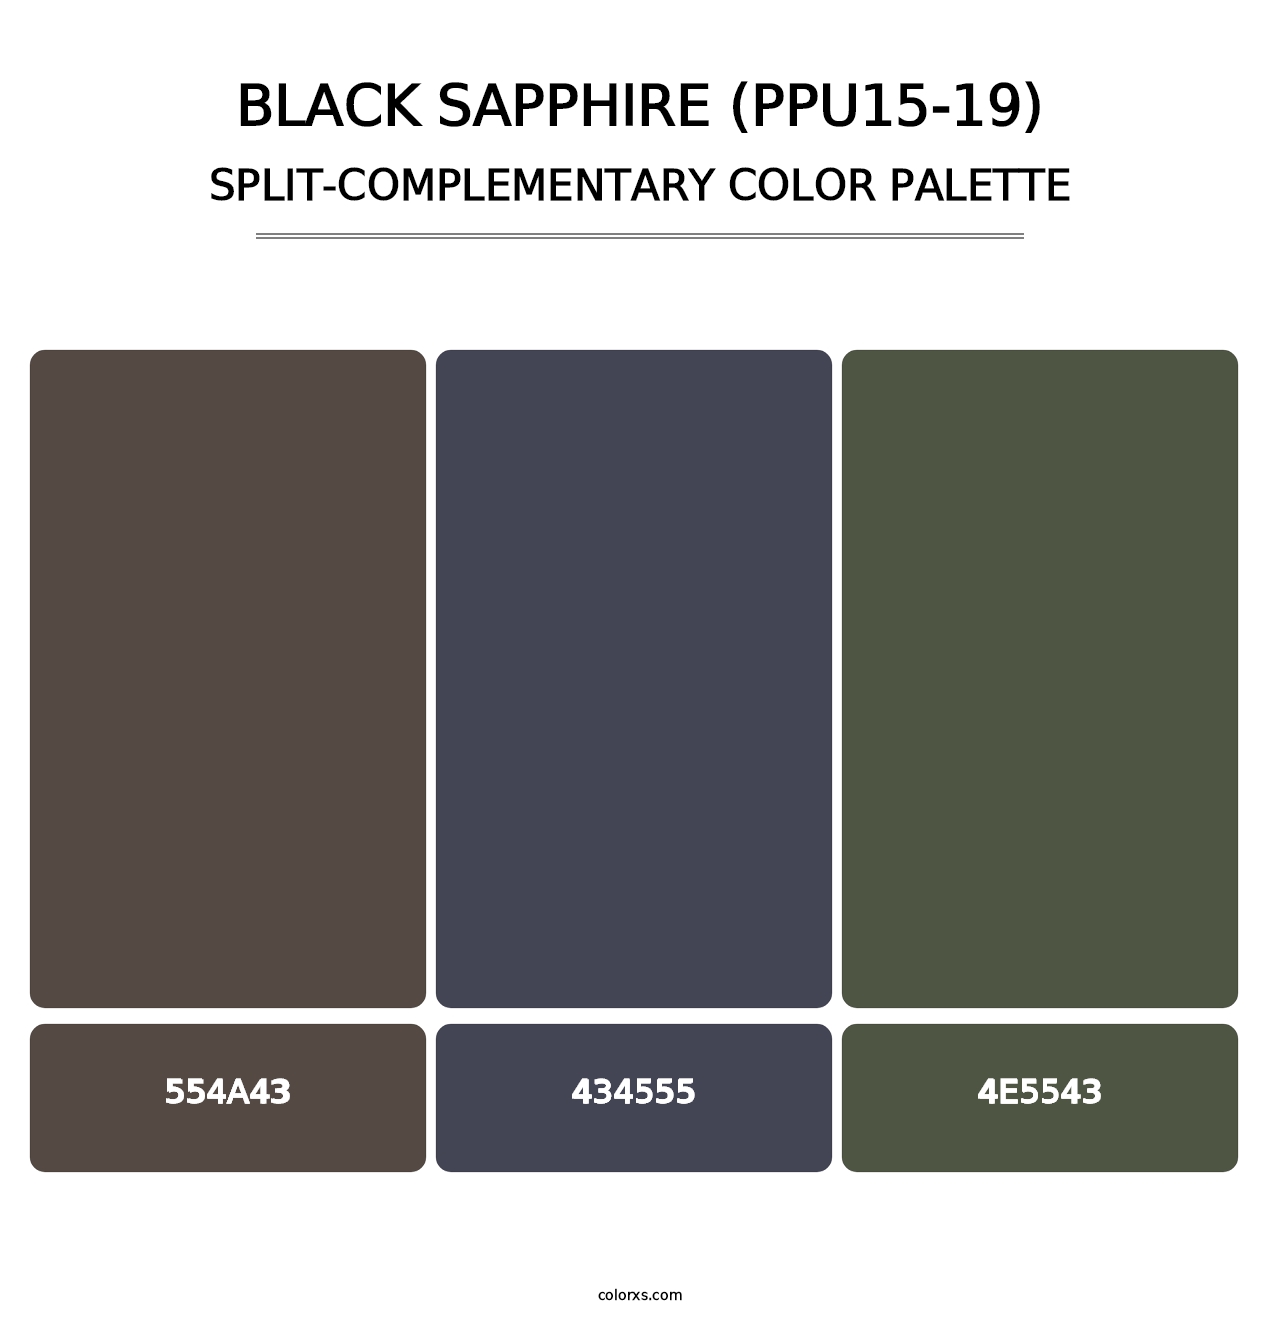 Black Sapphire (PPU15-19) - Split-Complementary Color Palette